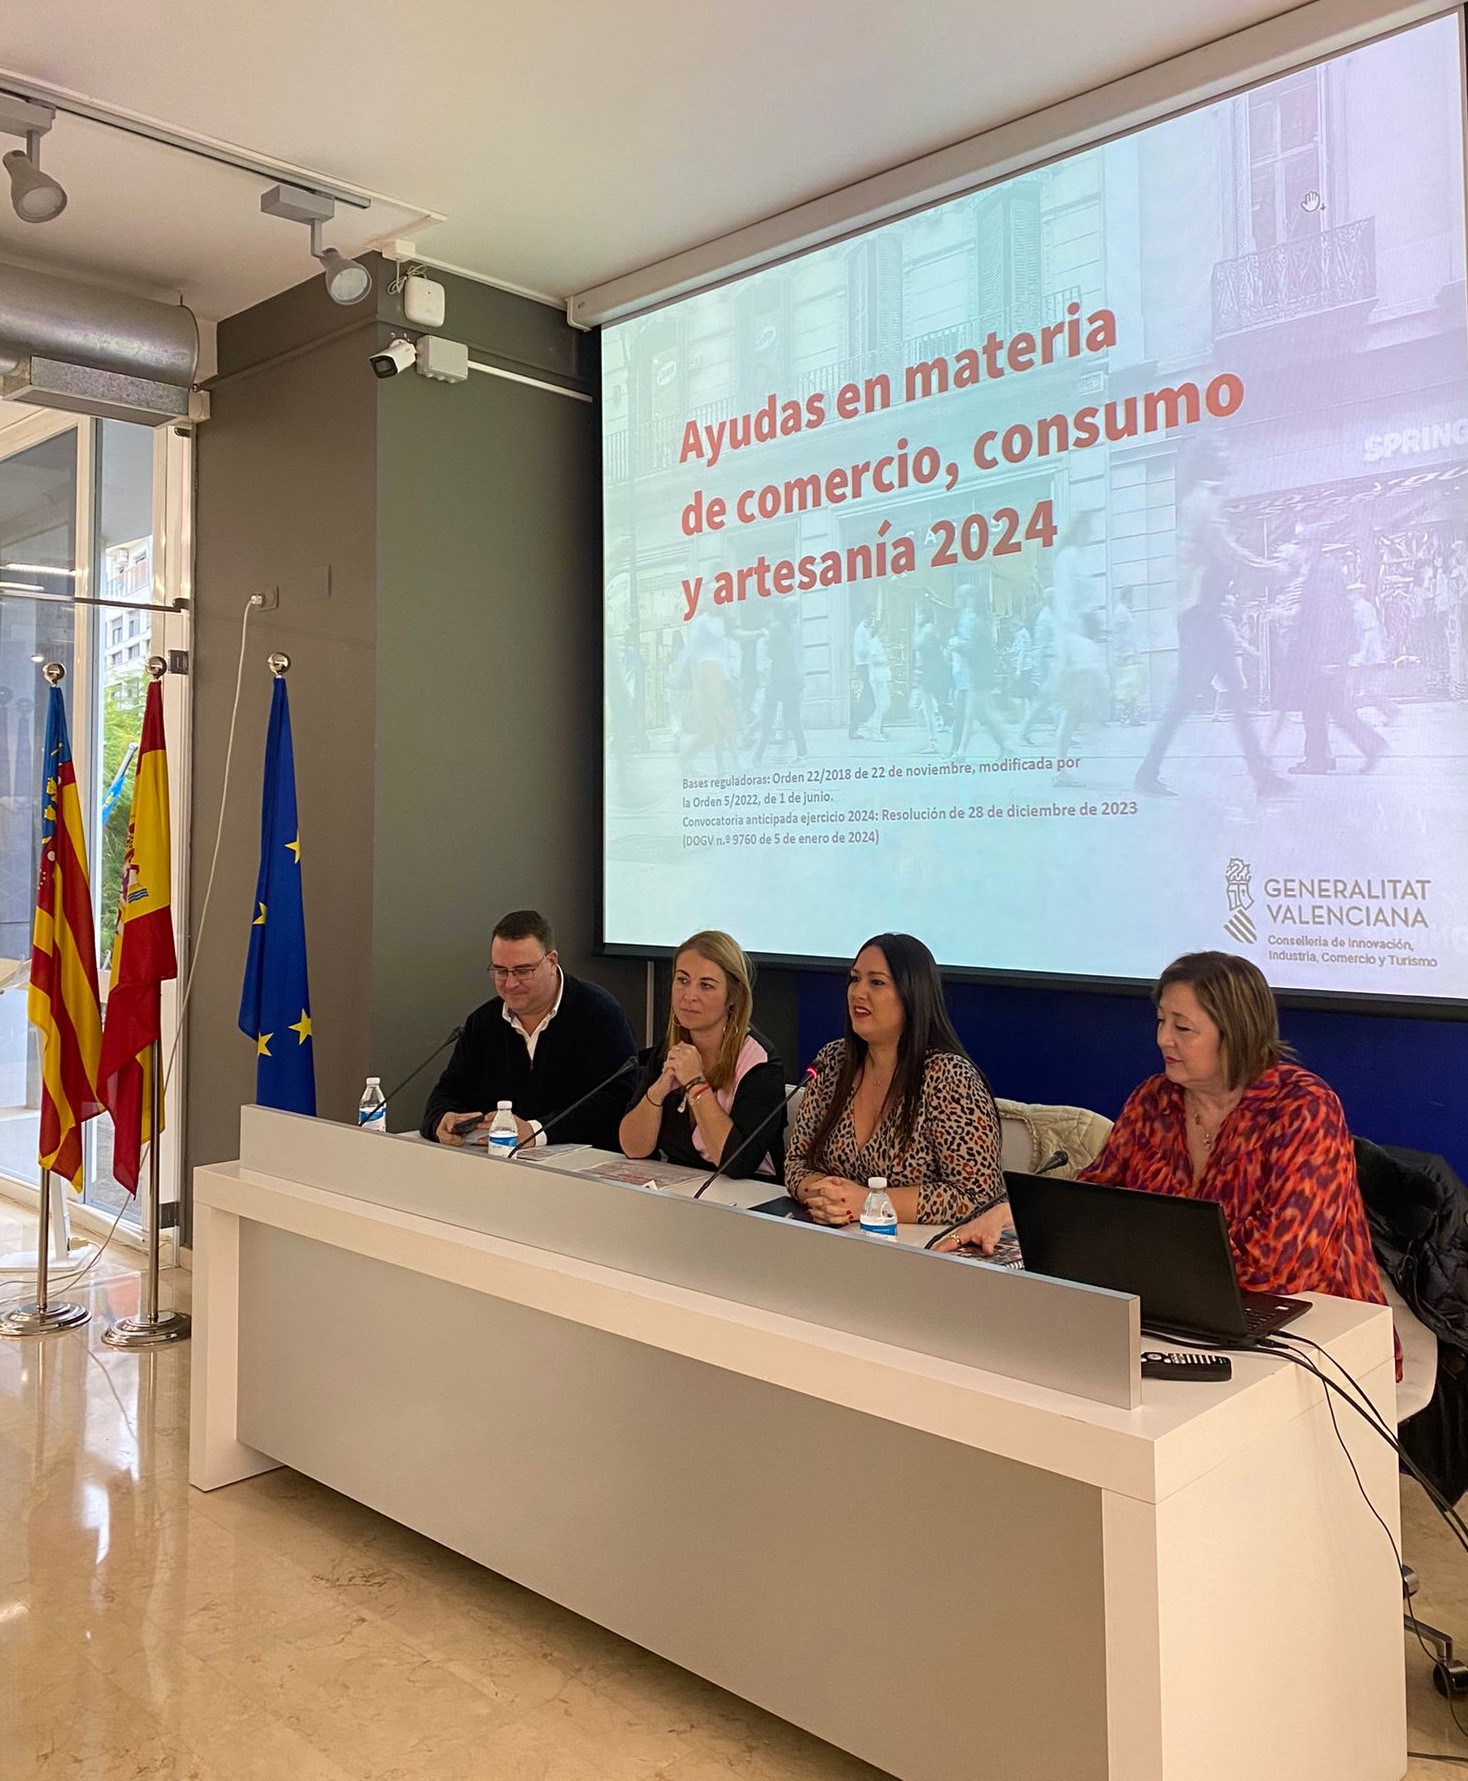 La Generalitat Valenciana presenta por primera vez junto a la Federación Valenciana de Municipios y Provincias las ayudas en materia de comercio, consumo y artesanía